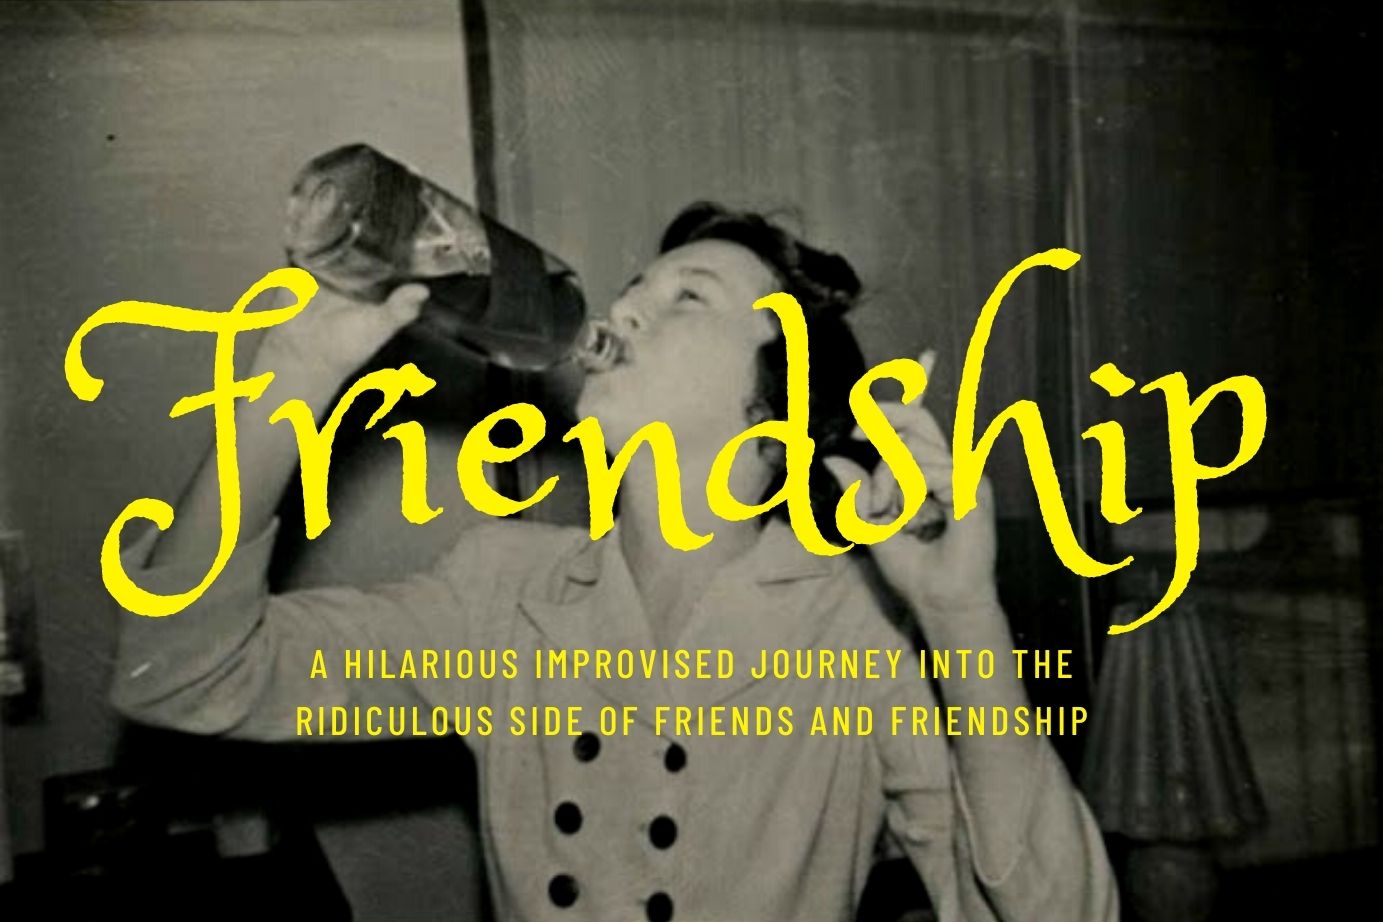 FRIENDSHIP by Grace Under Fire